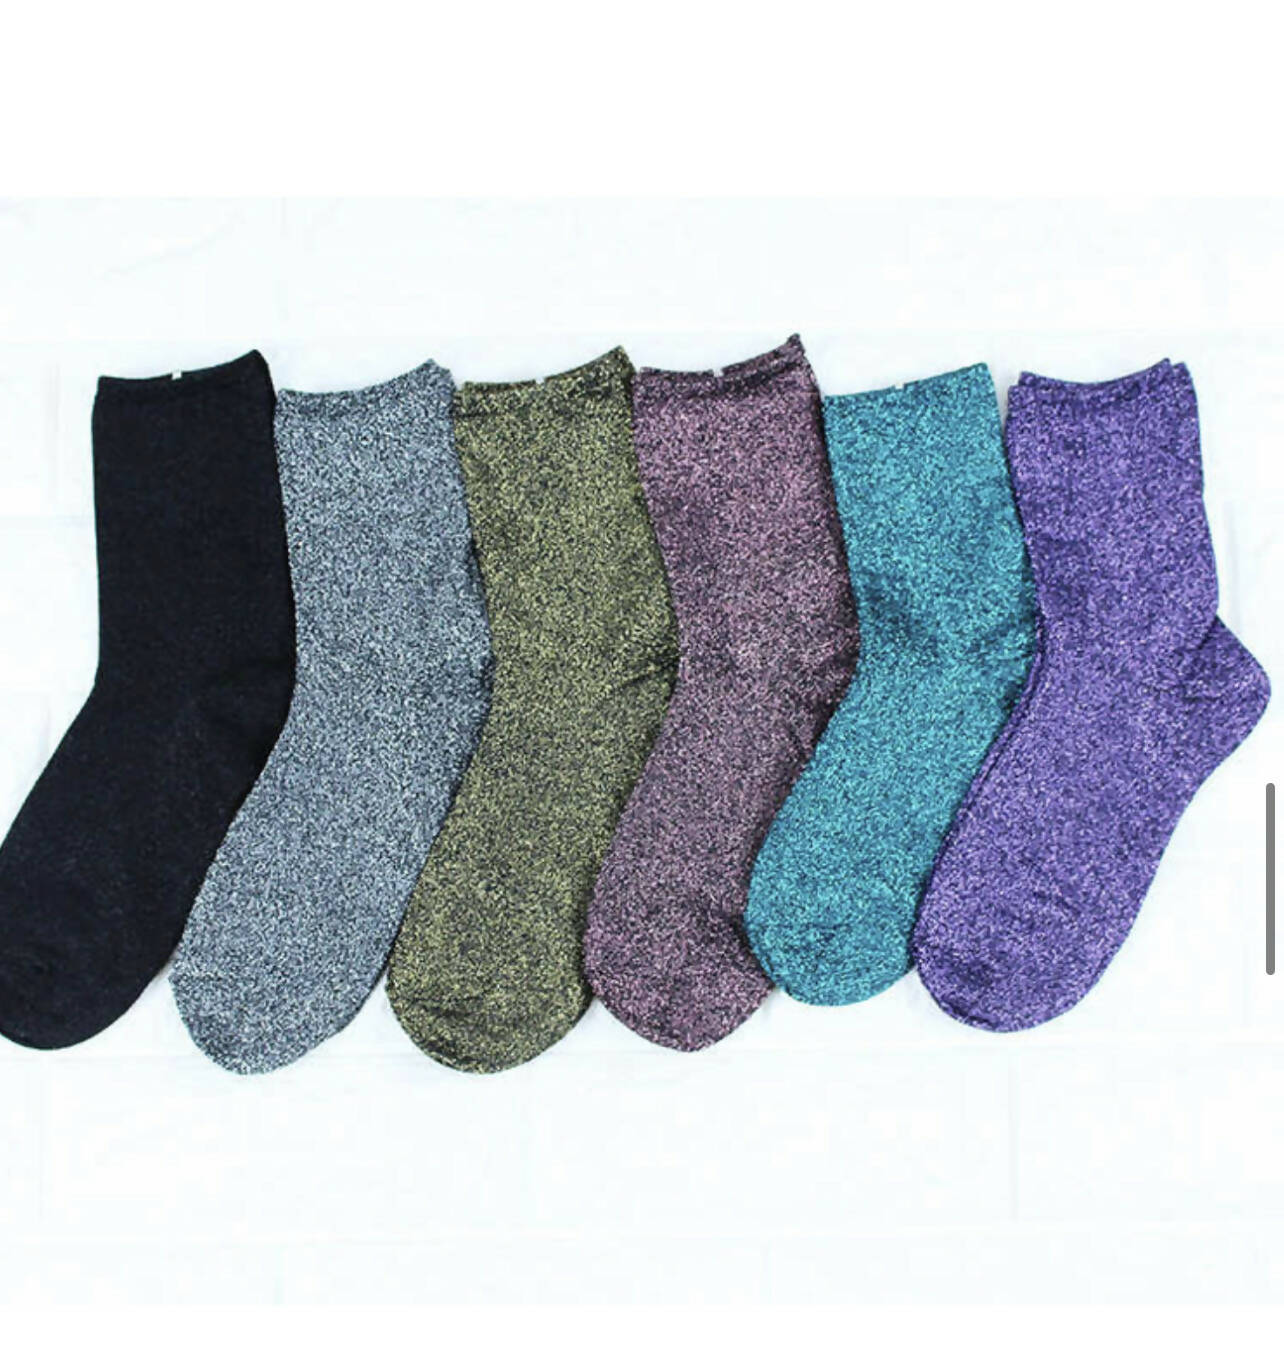 Splendid Glitter Metallic Shimmer Crew Socks, 6 Color SET